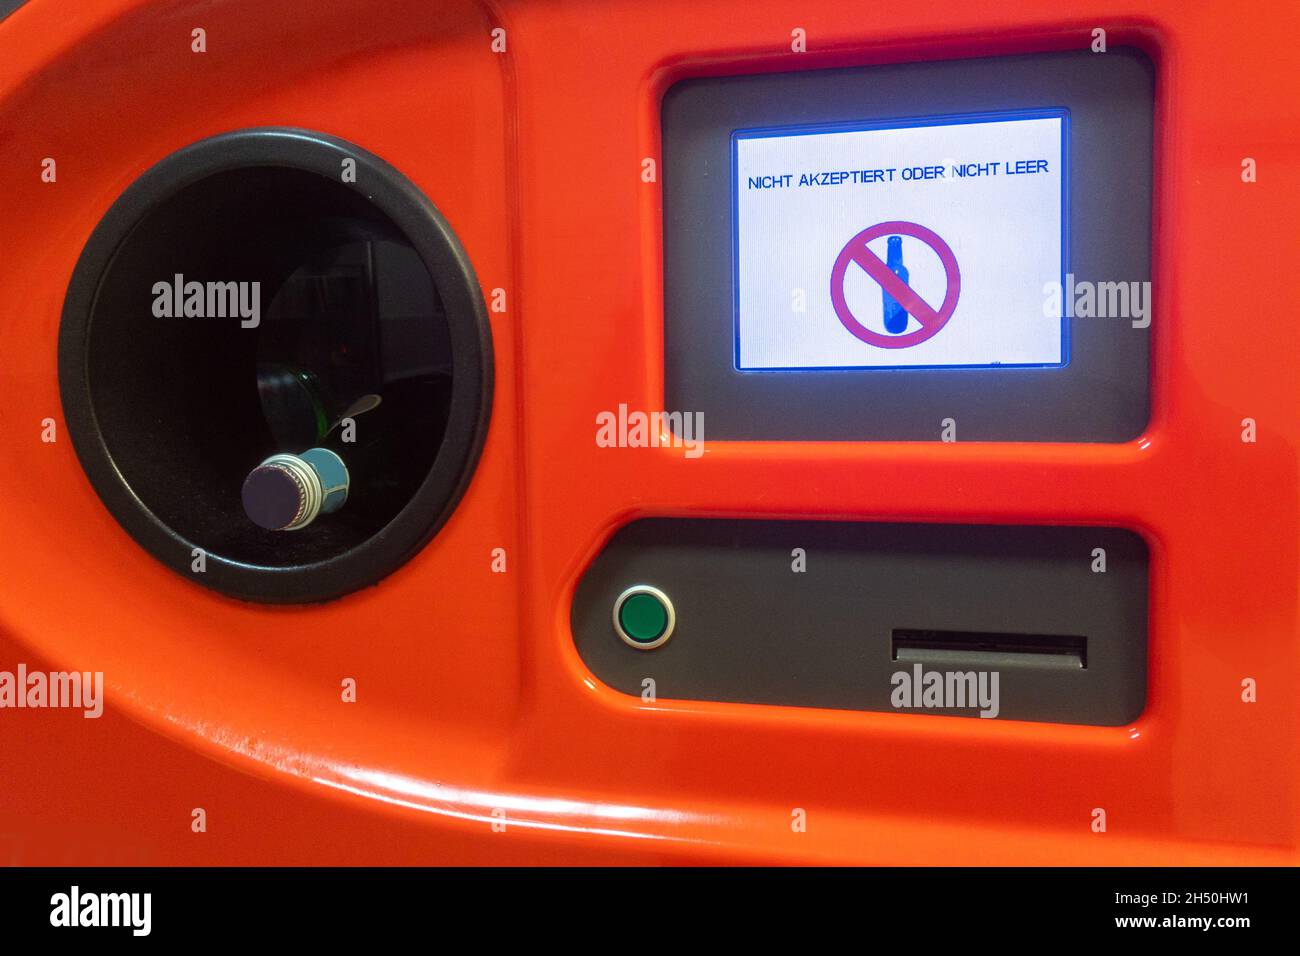 Orangefarbener Flaschenrückgabeautomat in einem Lebensmittelgeschäft, das auf Deutsch zeigt: Nicht akzeptiert oder nicht leer Stockfoto